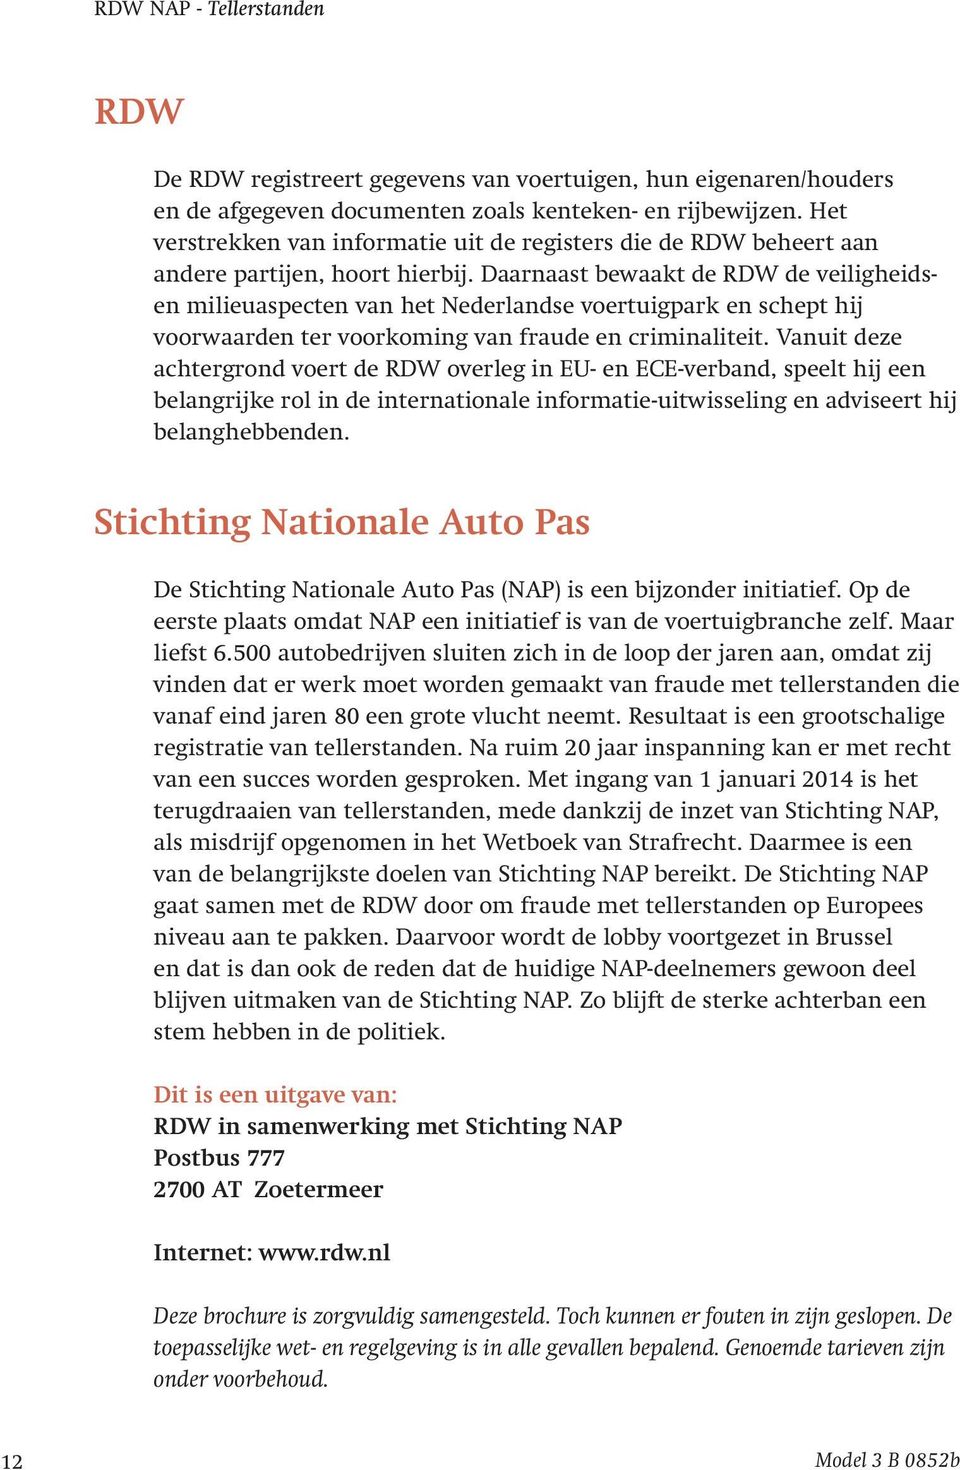 Daarnaast bewaakt de RDW de veiligheidsen milieuaspecten van het Nederlandse voertuigpark en schept hij voorwaarden ter voorkoming van fraude en criminaliteit.